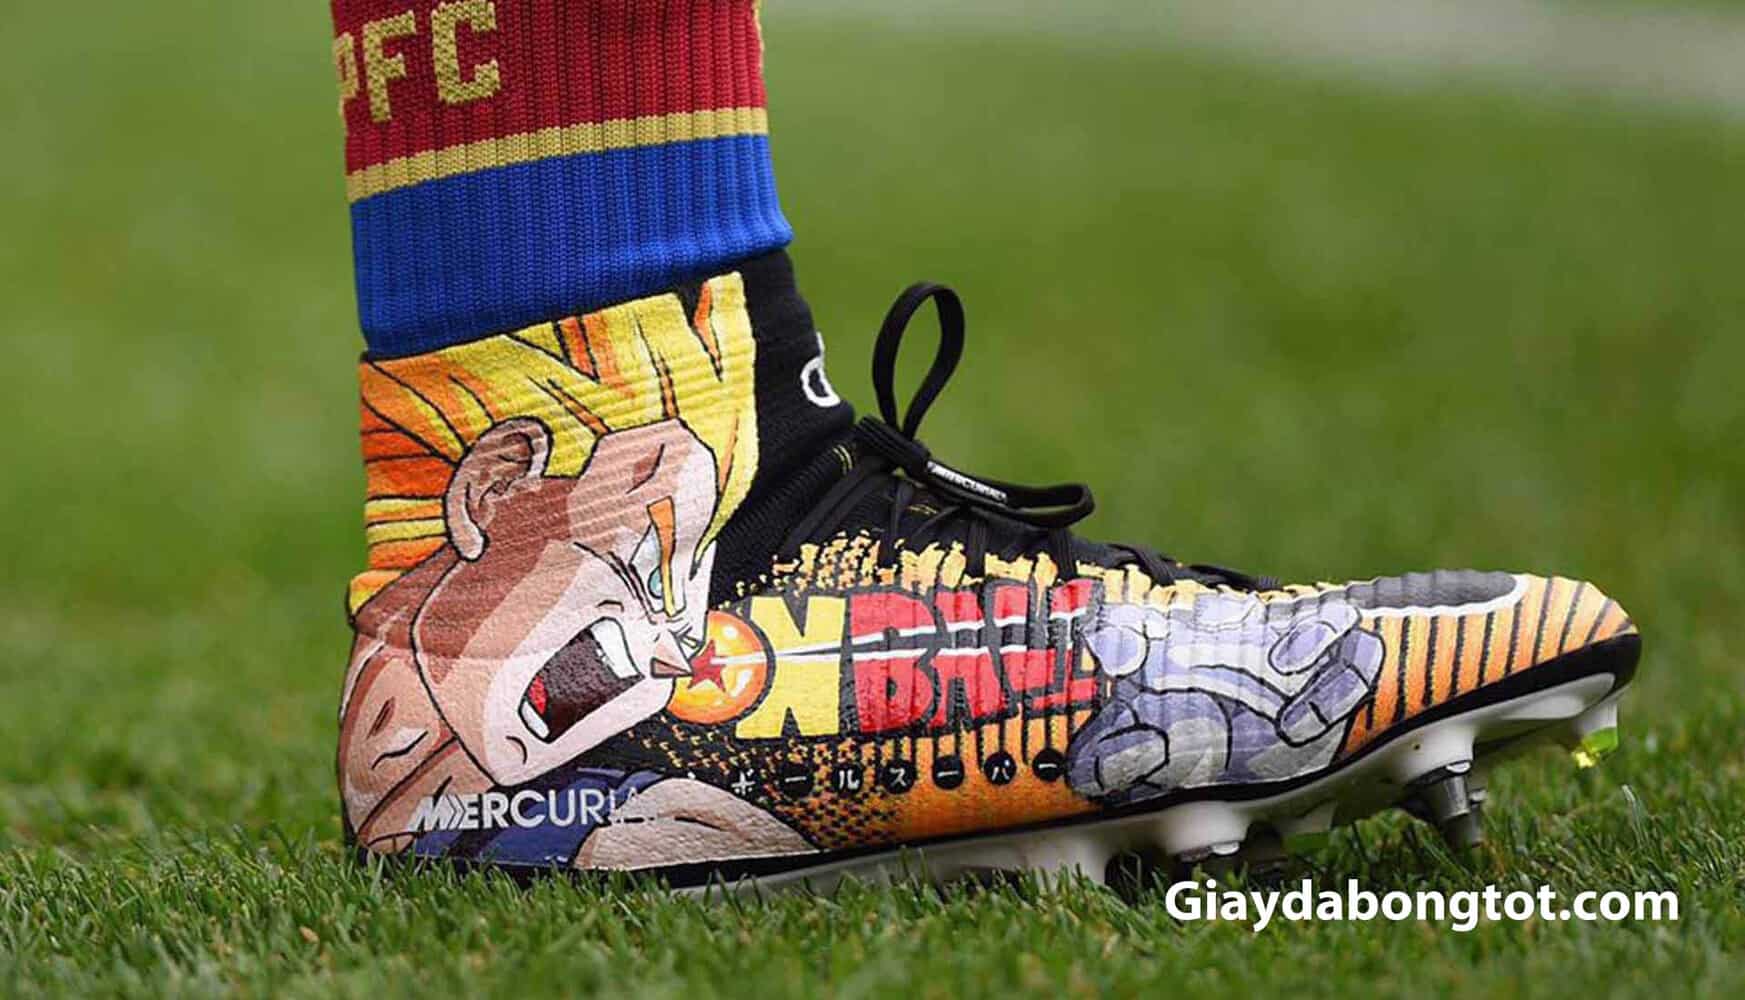 Mẫu giày đá bóng in hình Vegata nổi bật trên các sân cỏ chuyên nghiệp